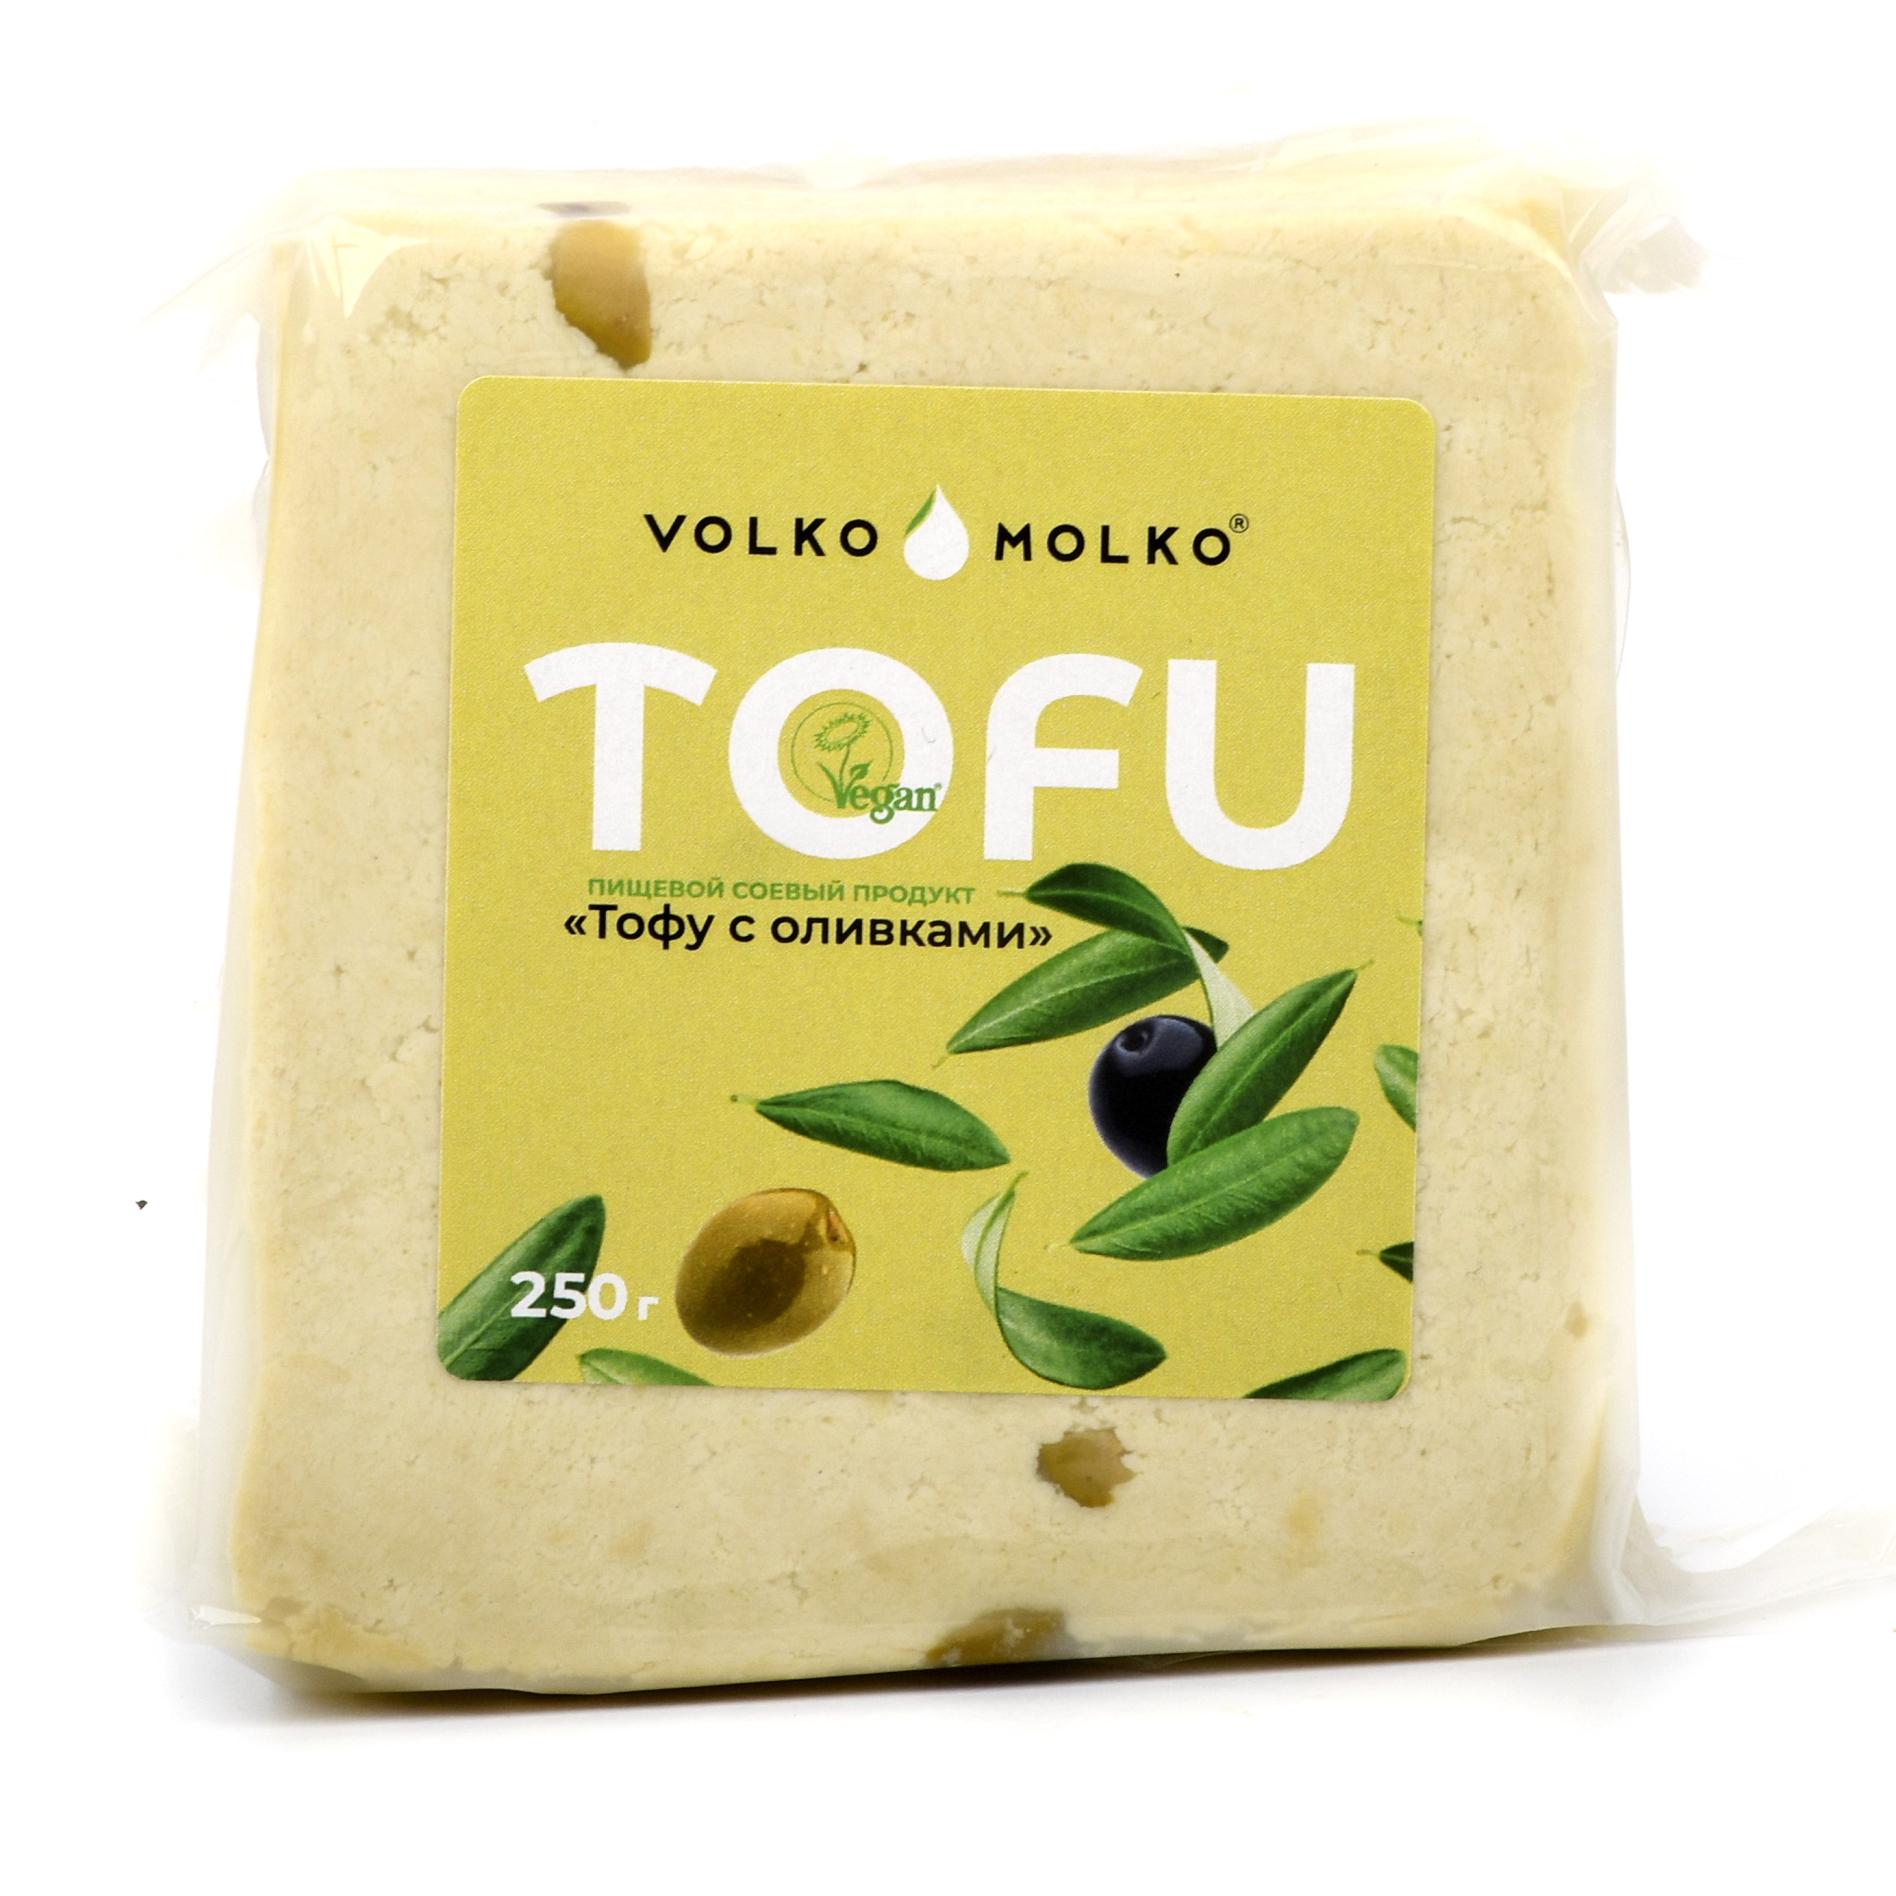 Сыр веганский Тофу с оливками, Volko Molko - 250 г